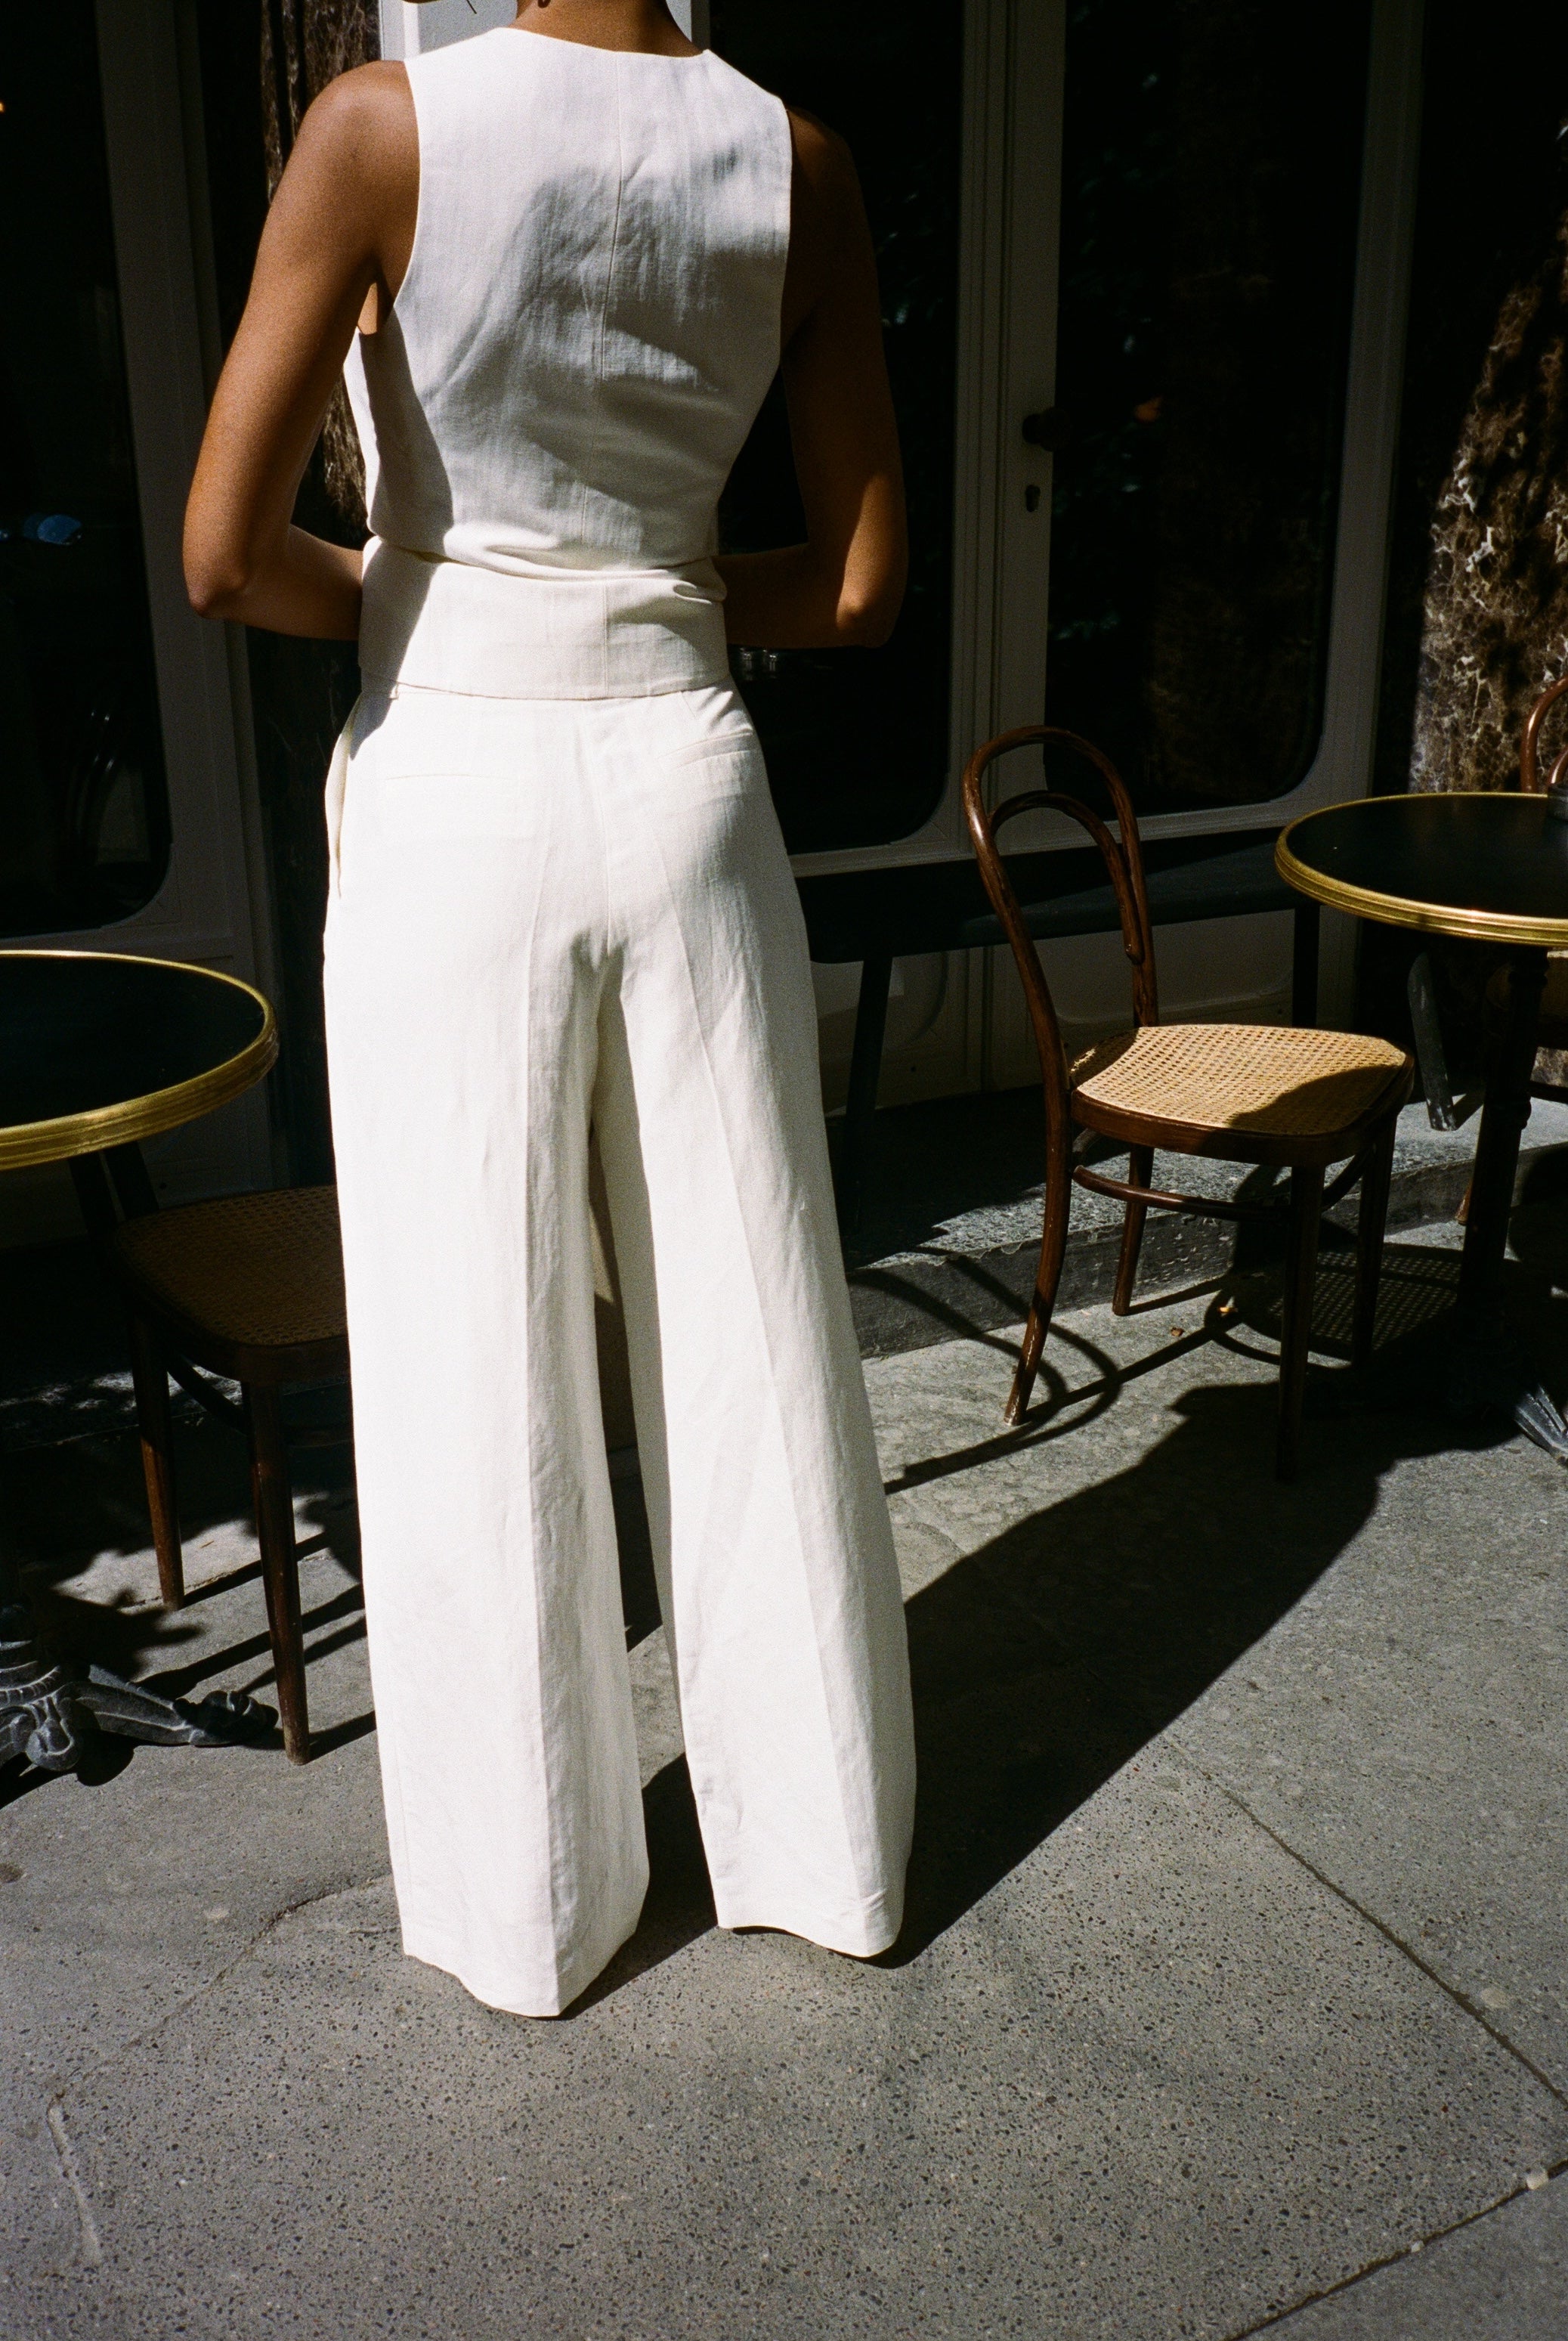 pantalon de tailleur femme toile de lin et soie blanc cassé Made in France par Facettes Studio